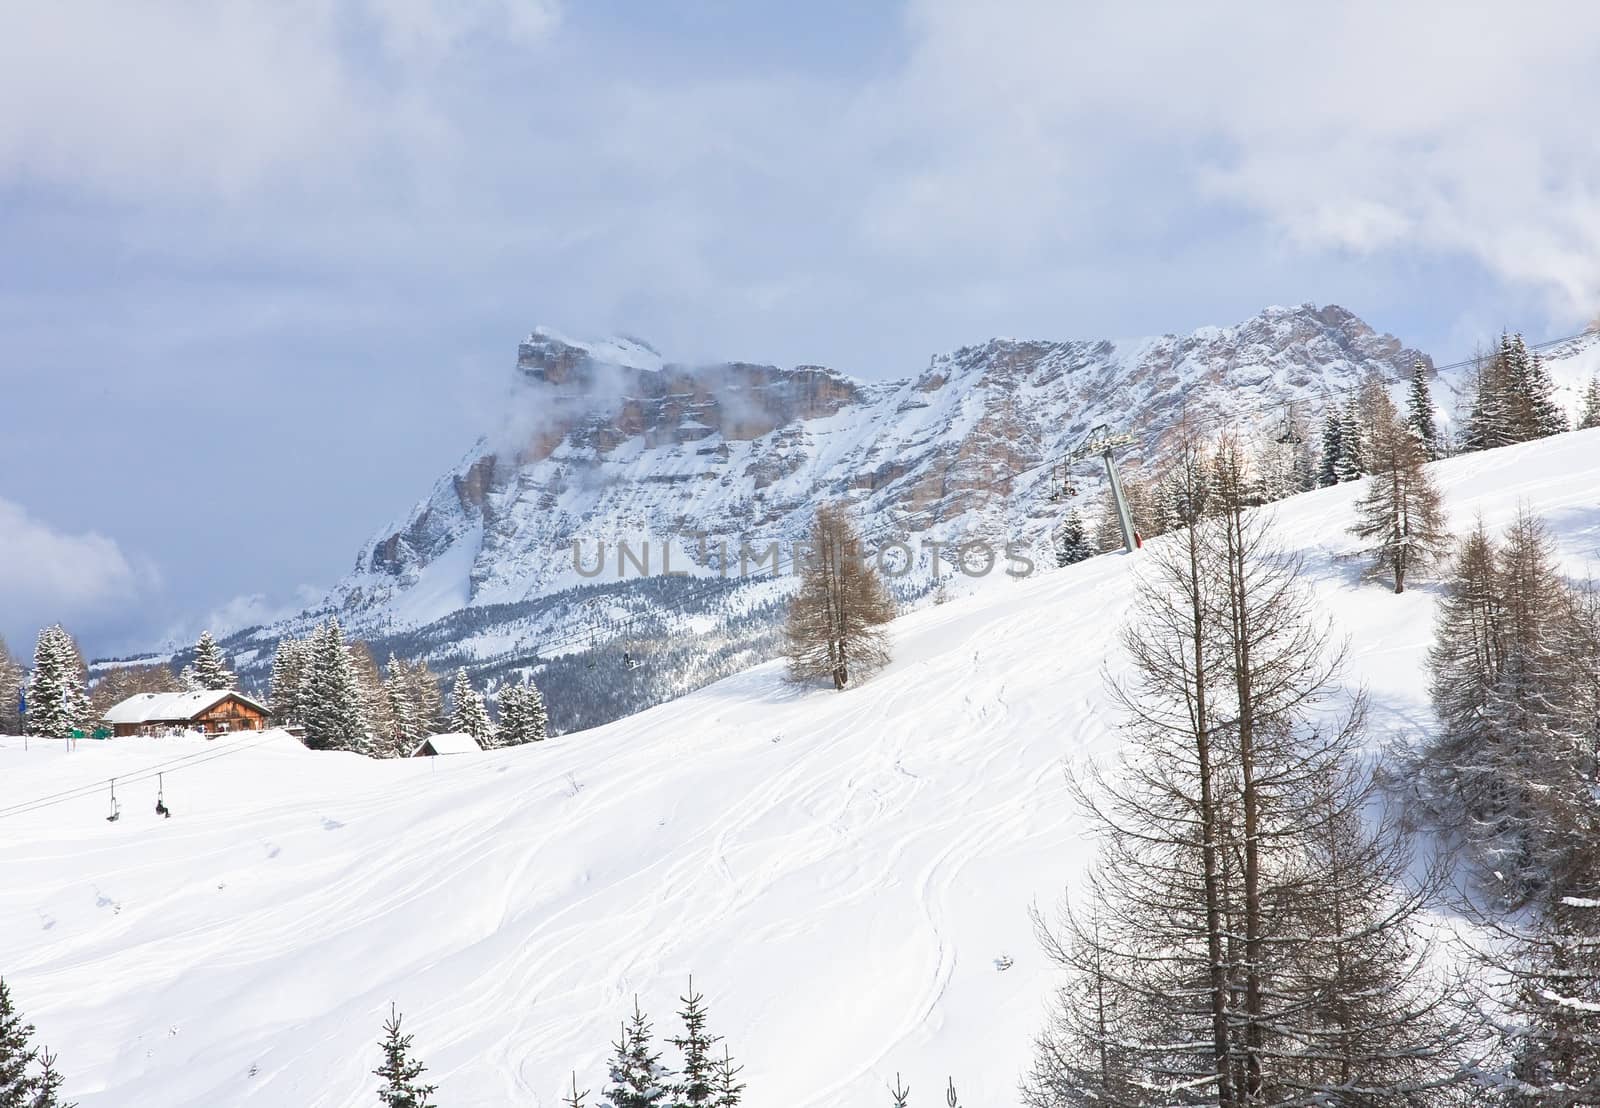 Ski resort of Selva di Val Gardena, Italy by nikolpetr